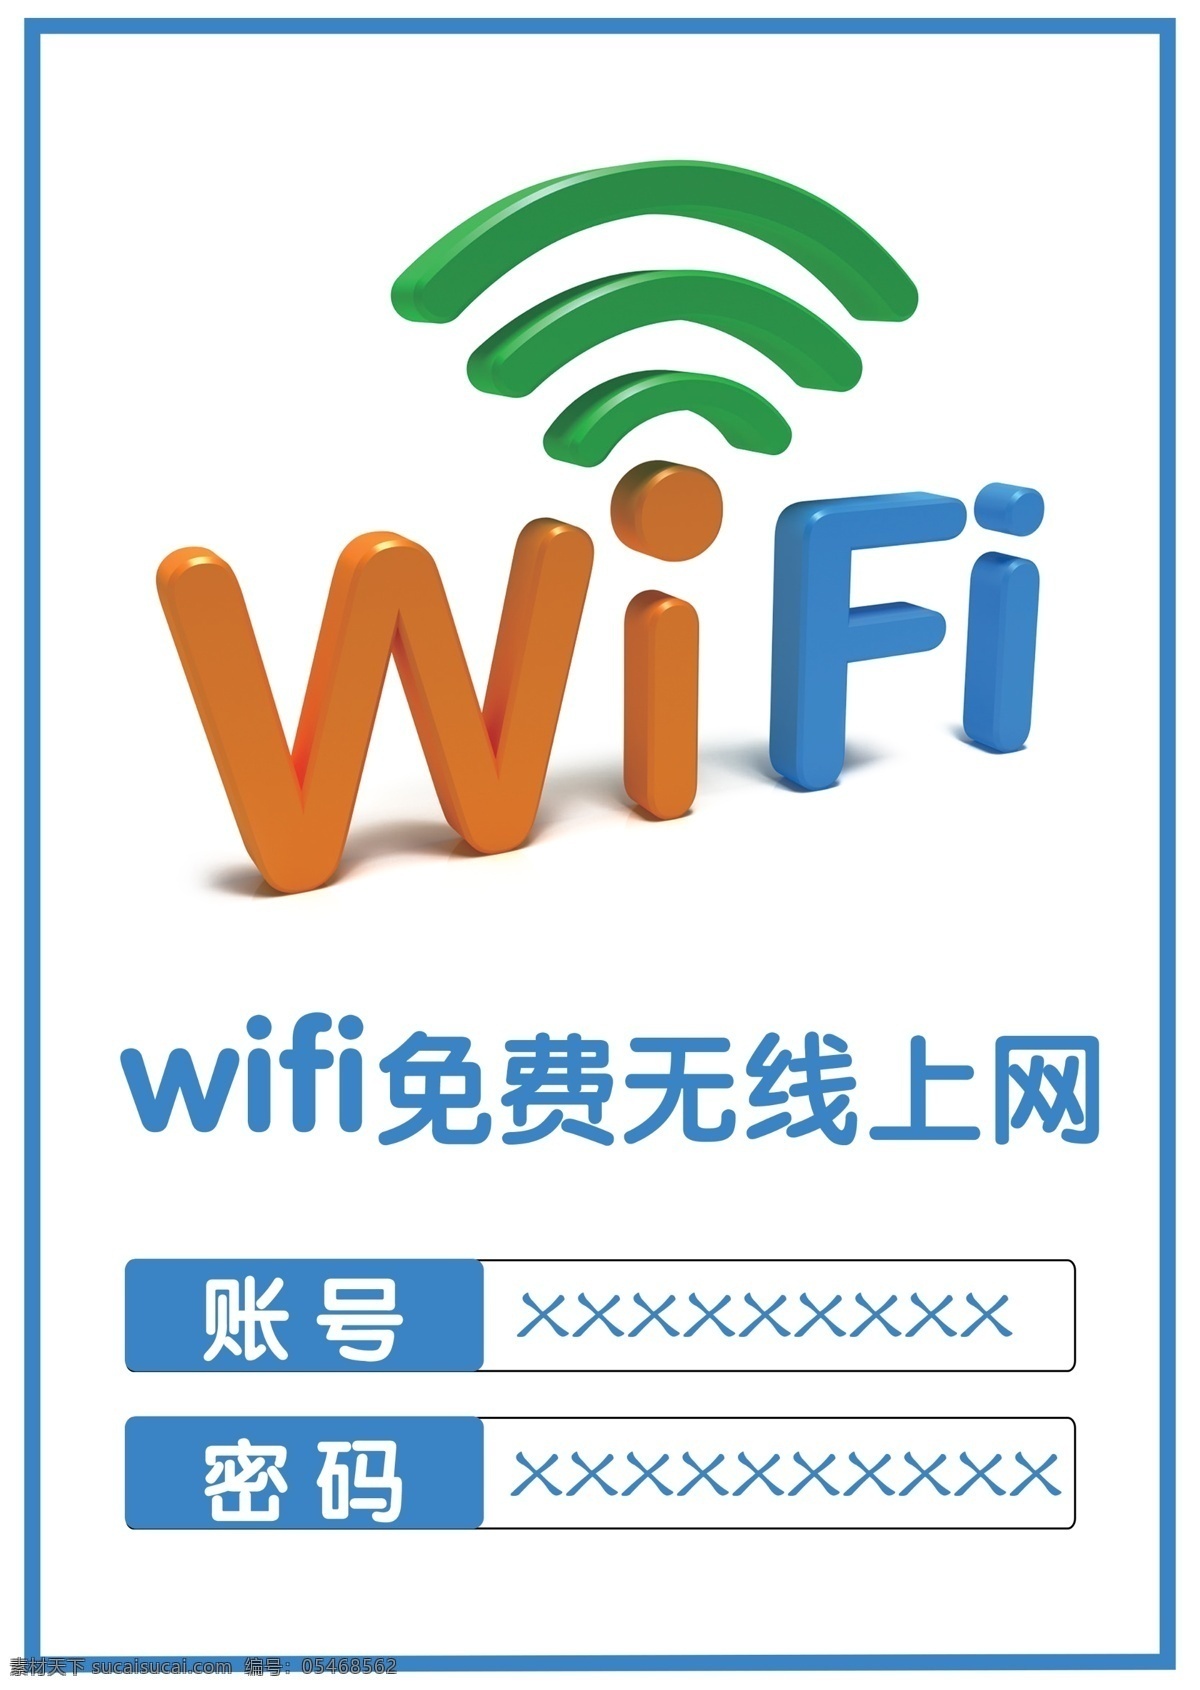 wifi海报 wifi 无线网络 无线网络覆盖 免费wifi 免费无线上网